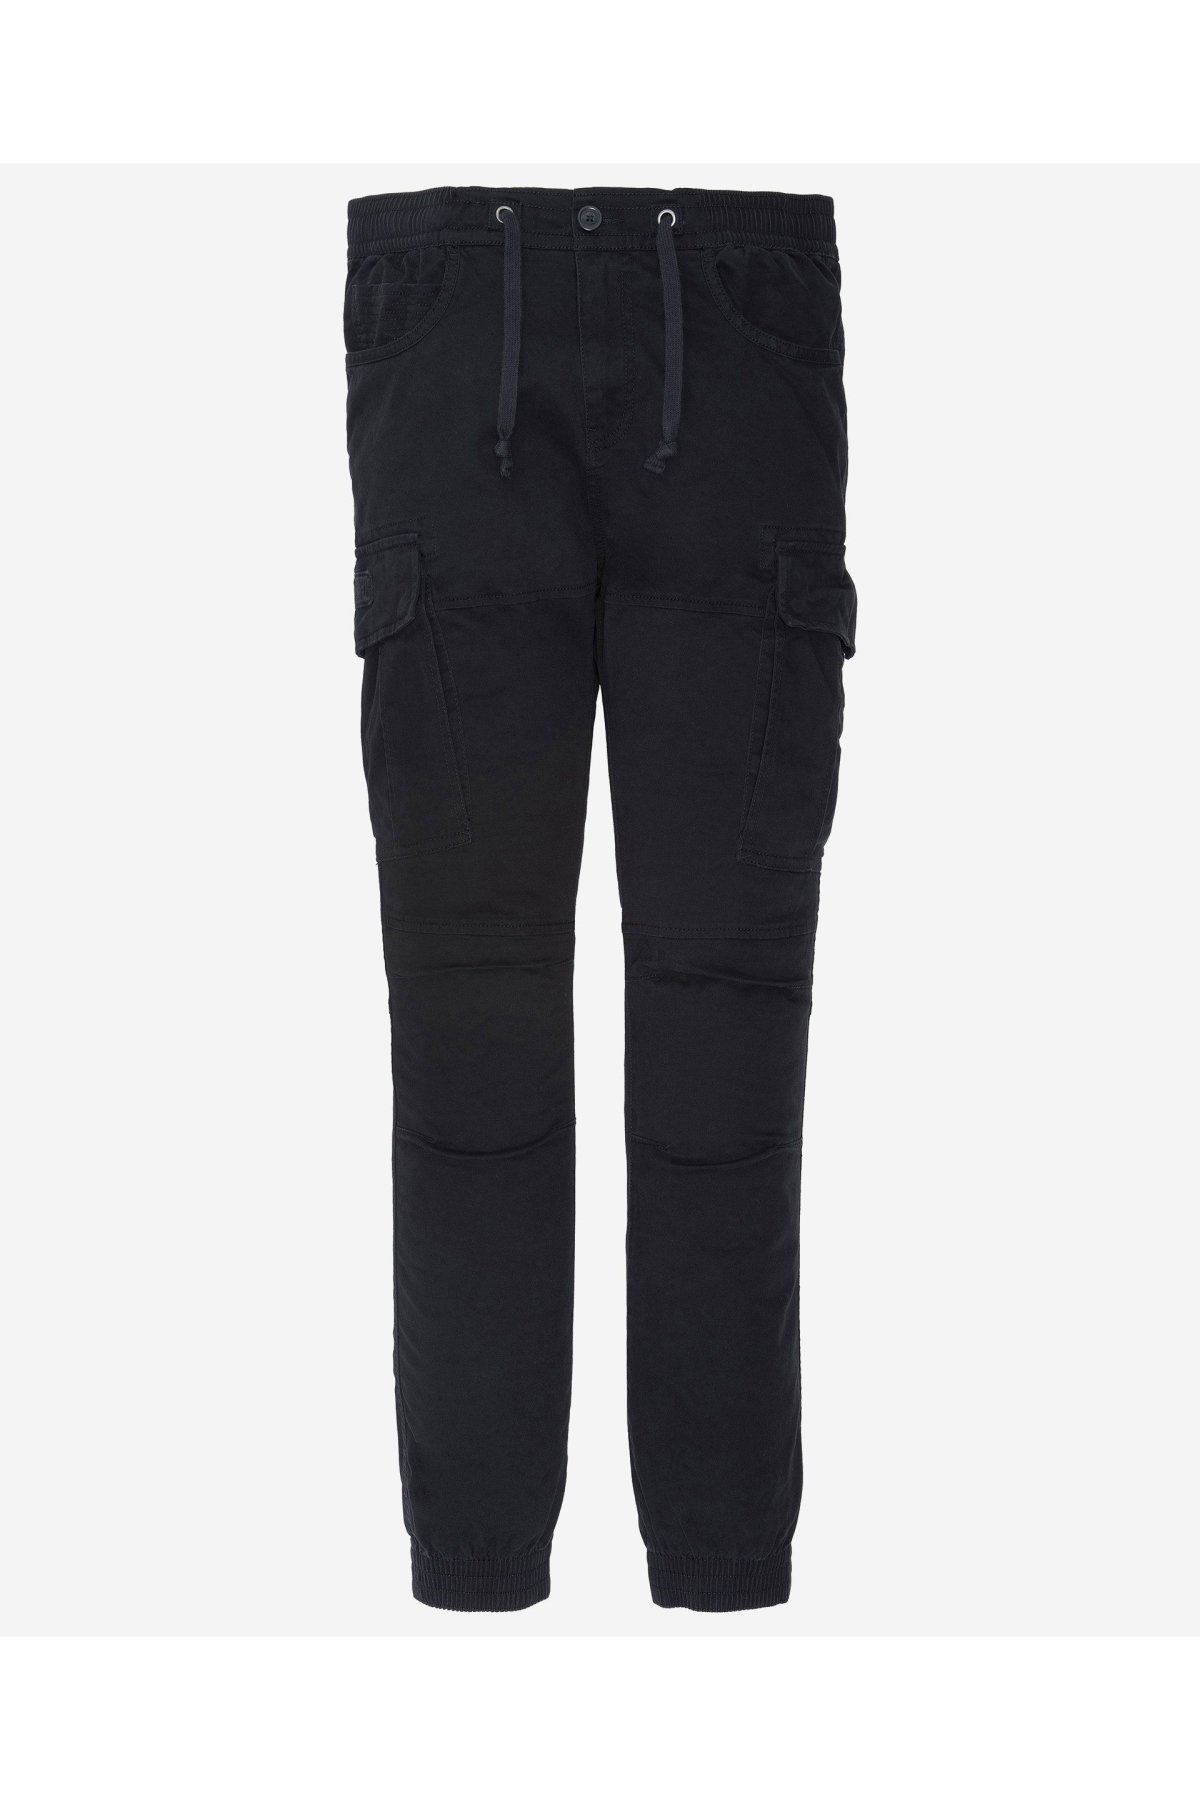 Schott NYC TRRELAX70 kalhoty černé